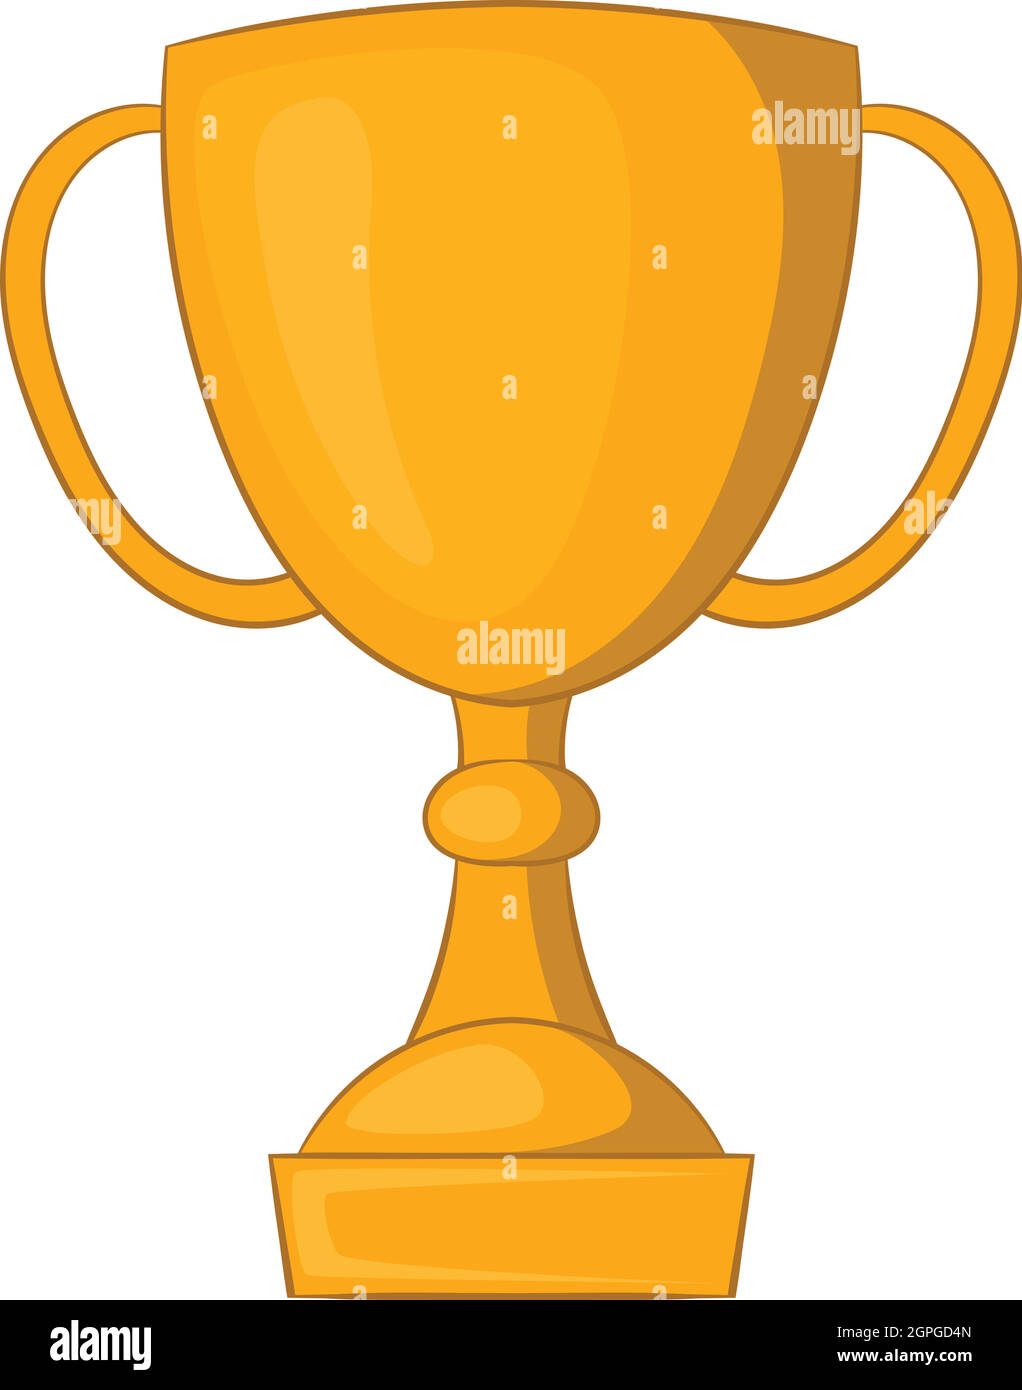 Coppa trofeo cartoon immagini e fotografie stock ad alta risoluzione - Alamy